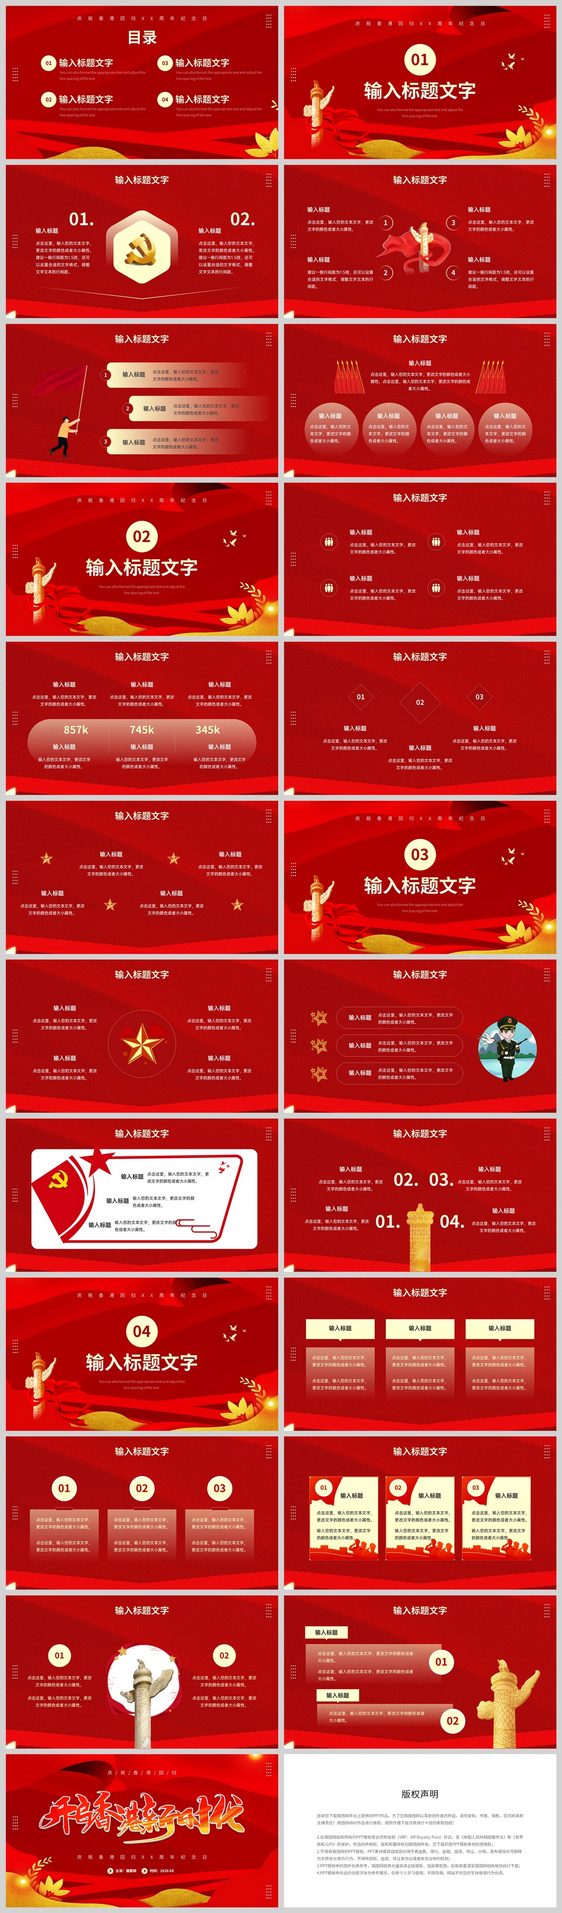 红色简约风格庆祝香港回归周年纪念日PPT模板